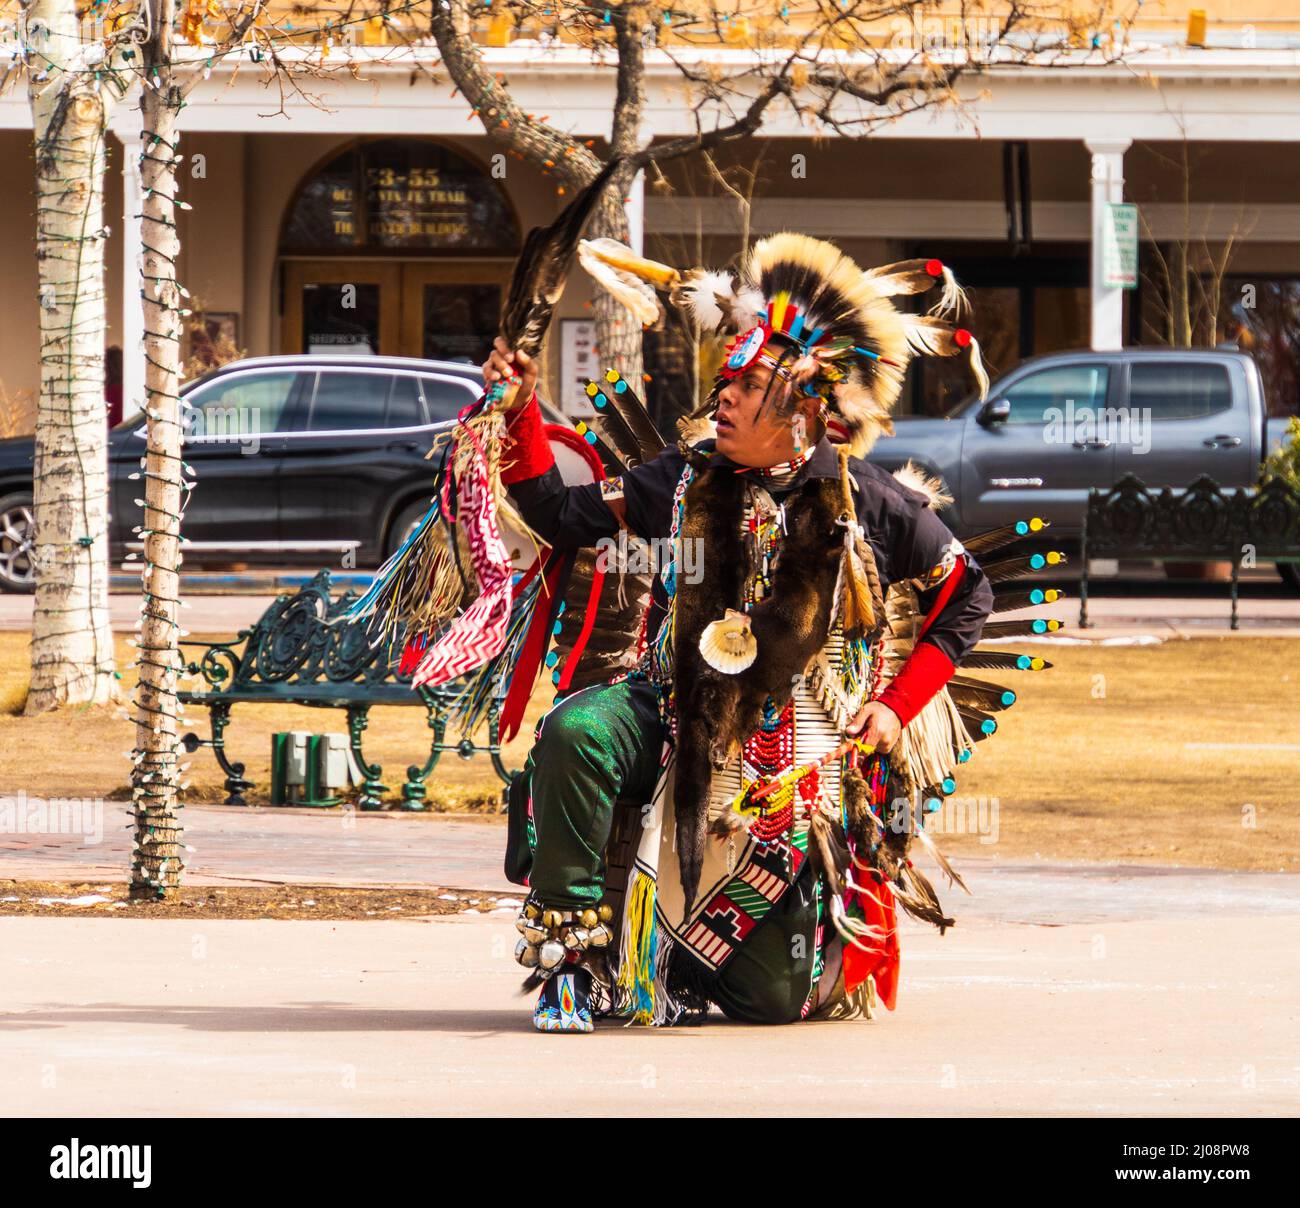 Santa Fe, Nuevo México/EE.UU.- 25 de febrero de 2022: Bailarín indígena nativo americano en el baile tradicional de disfraces en la plaza Foto de stock